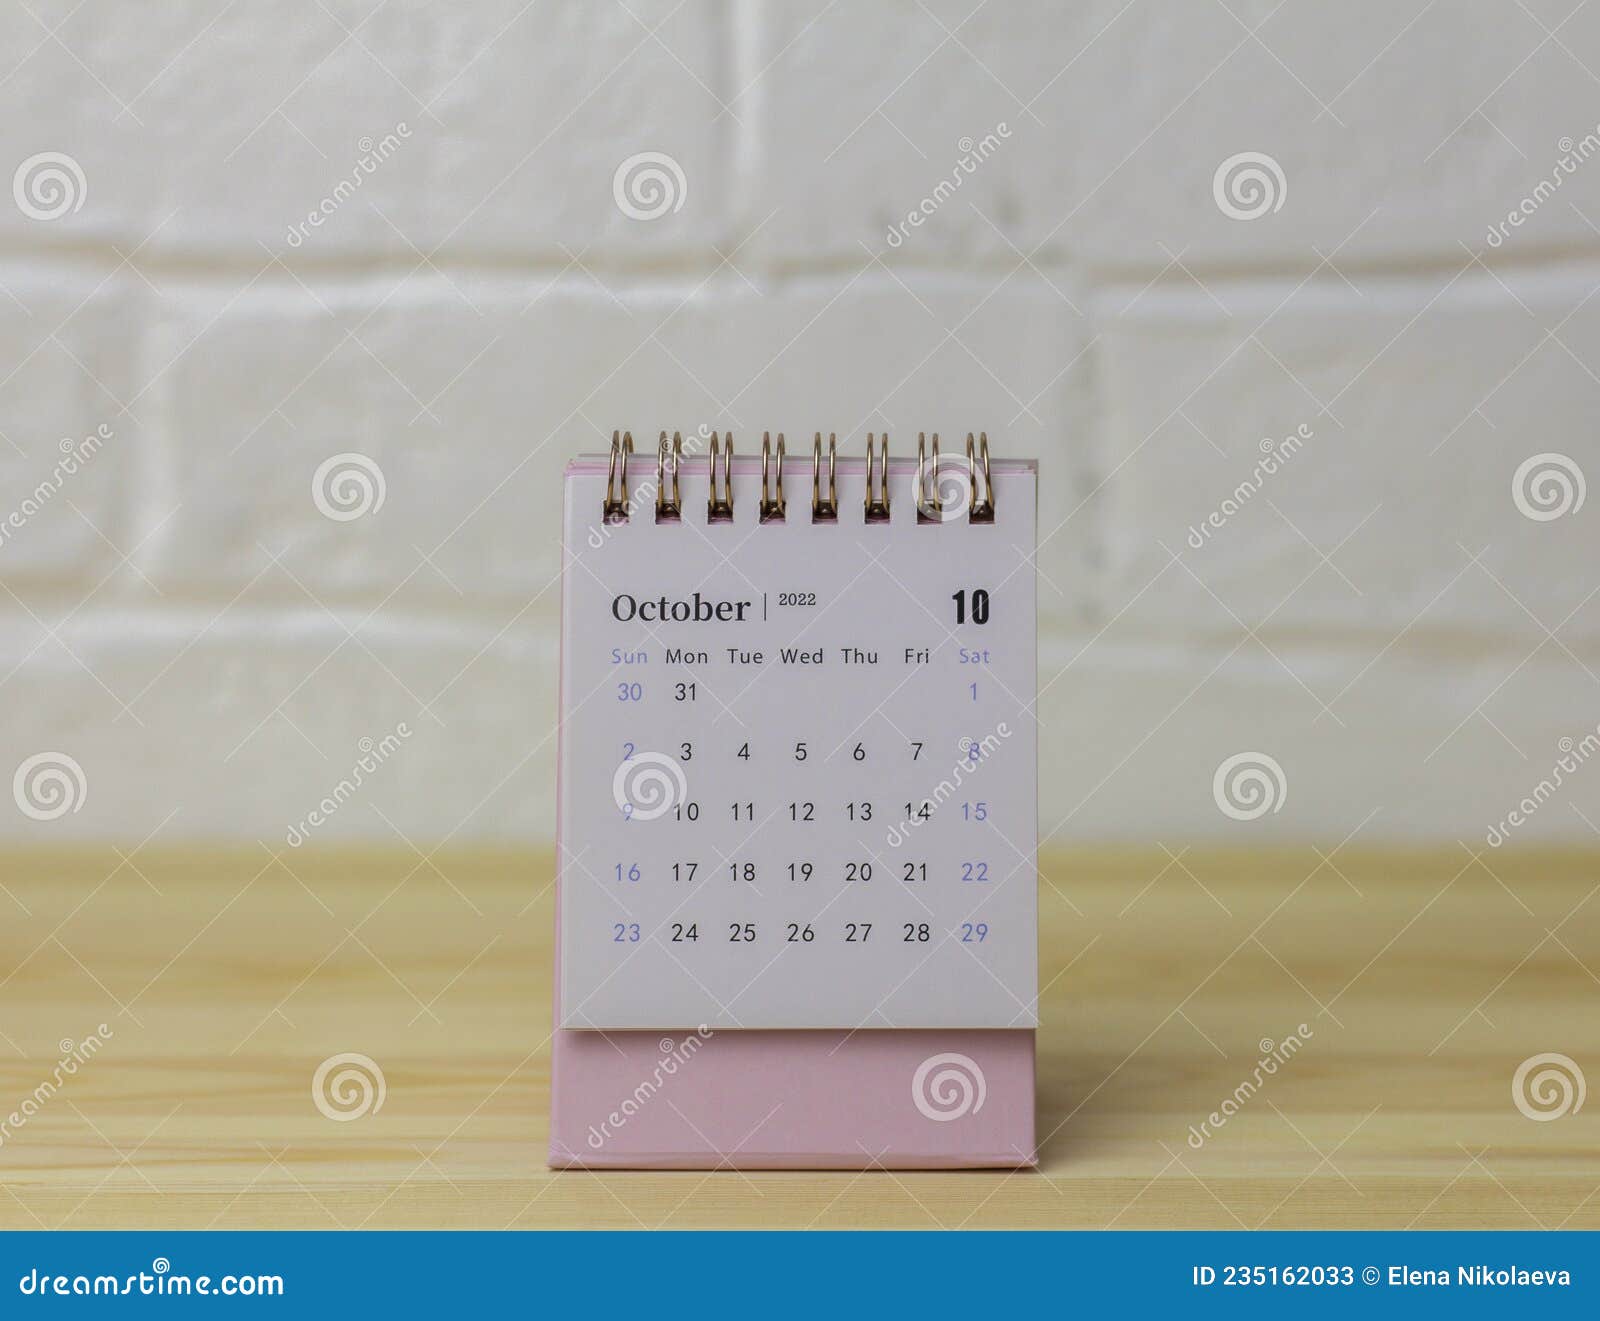 October 2022 Calendar Desktop Desktop Calendar For October 2022.Calendar For Planning For The Month Stock  Image - Image Of Office, Appointment: 235162033